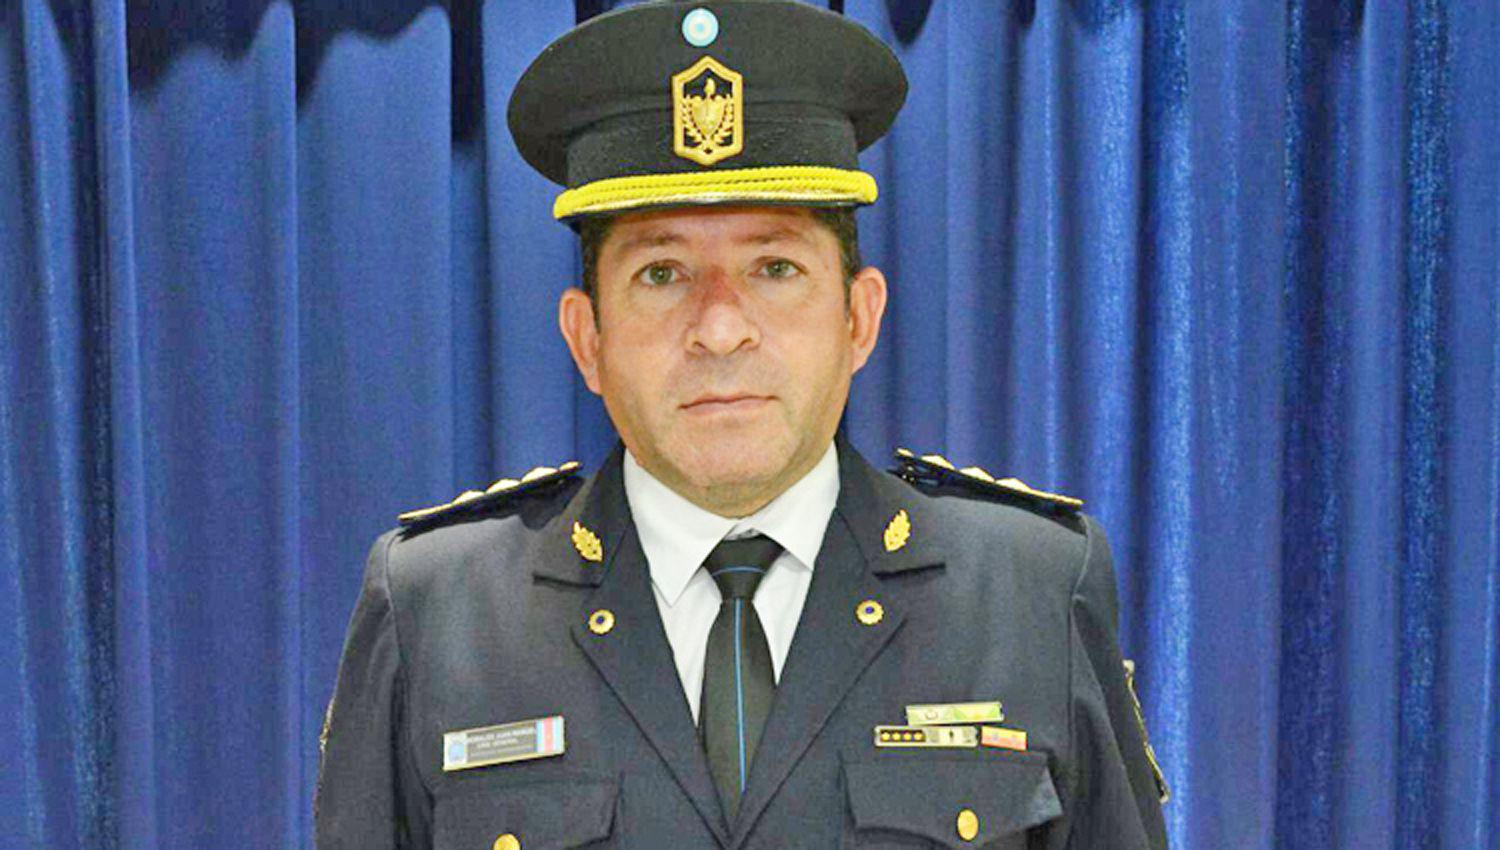 El comisario general Morales asumió su cargo de subjefe
de la Policía el pasado 21 de abril del 2020